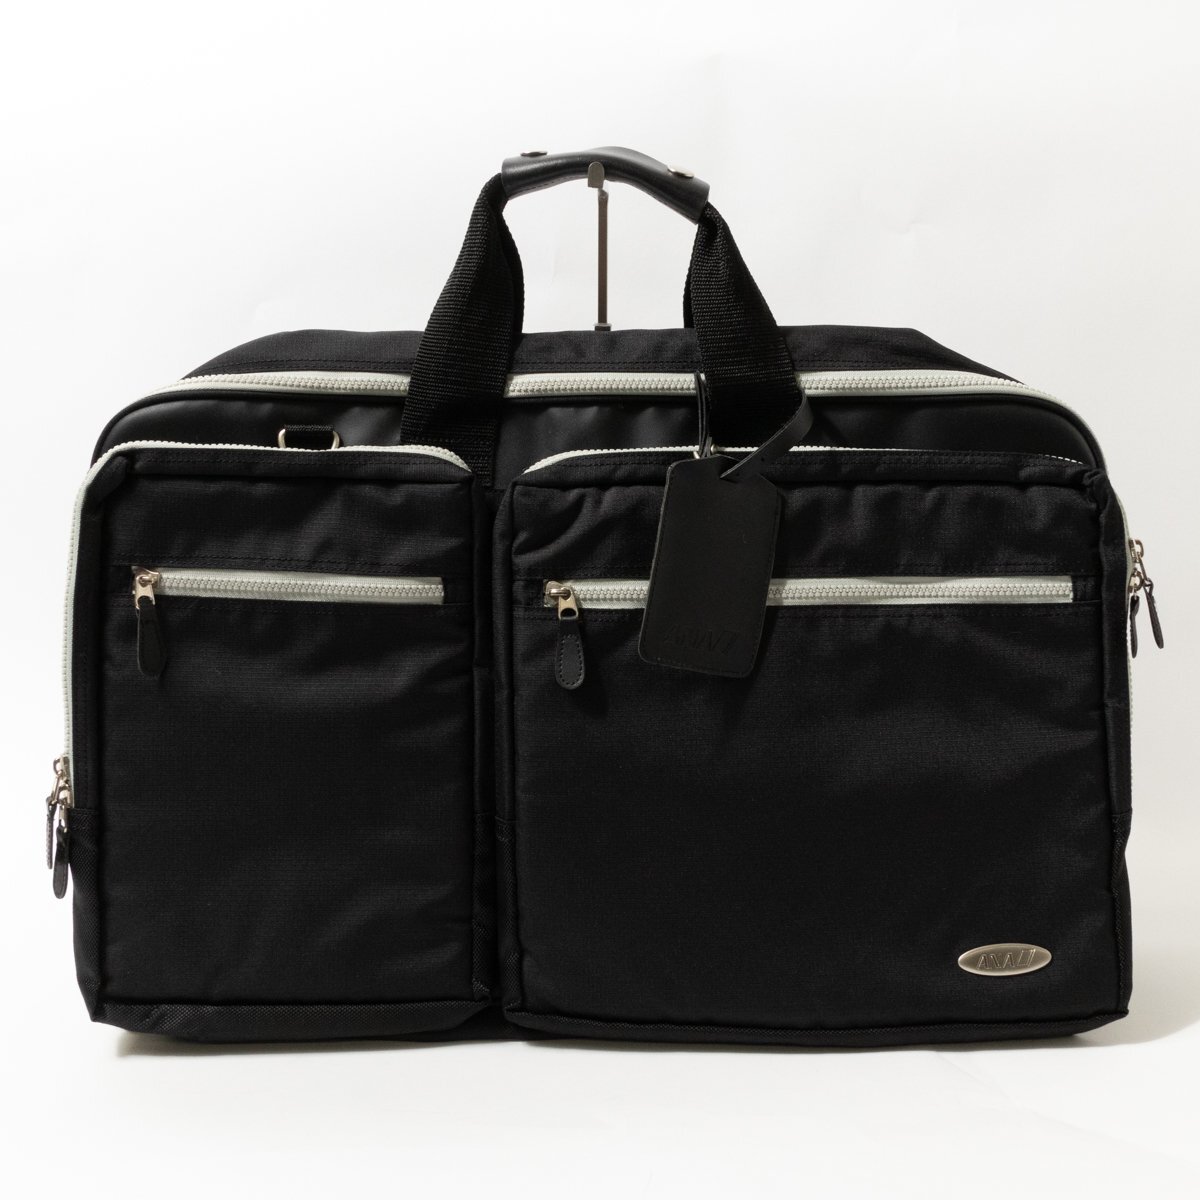 ANA アナ 全日空 ガーメントバッグ ビジネスバッグ ブラック 黒 グレー ナイロン 収納多数 ハンガー付き メンズ 手さげ ビジネス bag 鞄